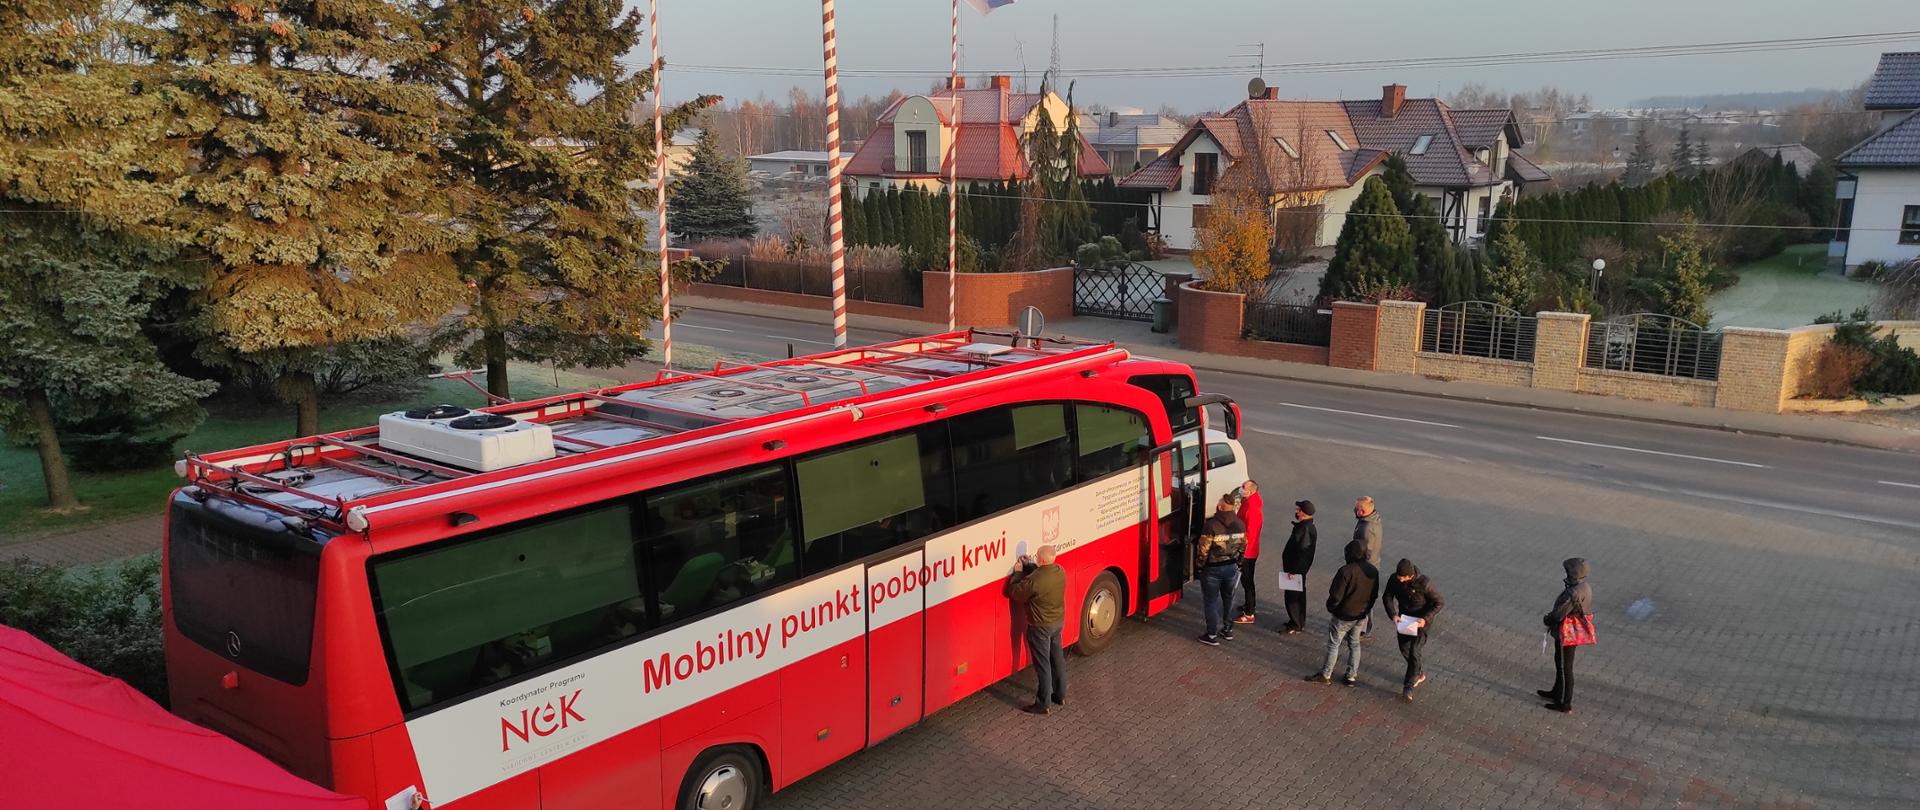 Zdjęcie przedstawia akcję krwiodawstwa organizowaną prze KP PSP w Koluszkach w dniu 26.11.2020 r. Na zdjęciu widoczny jest autobus krwiodawstwa z napisem "Mobilny punkt poboru krwi" oraz kolejka chętnych do oddania krwi. Zdjęcie przed budynkiem KP PSP w Koluszkach. 